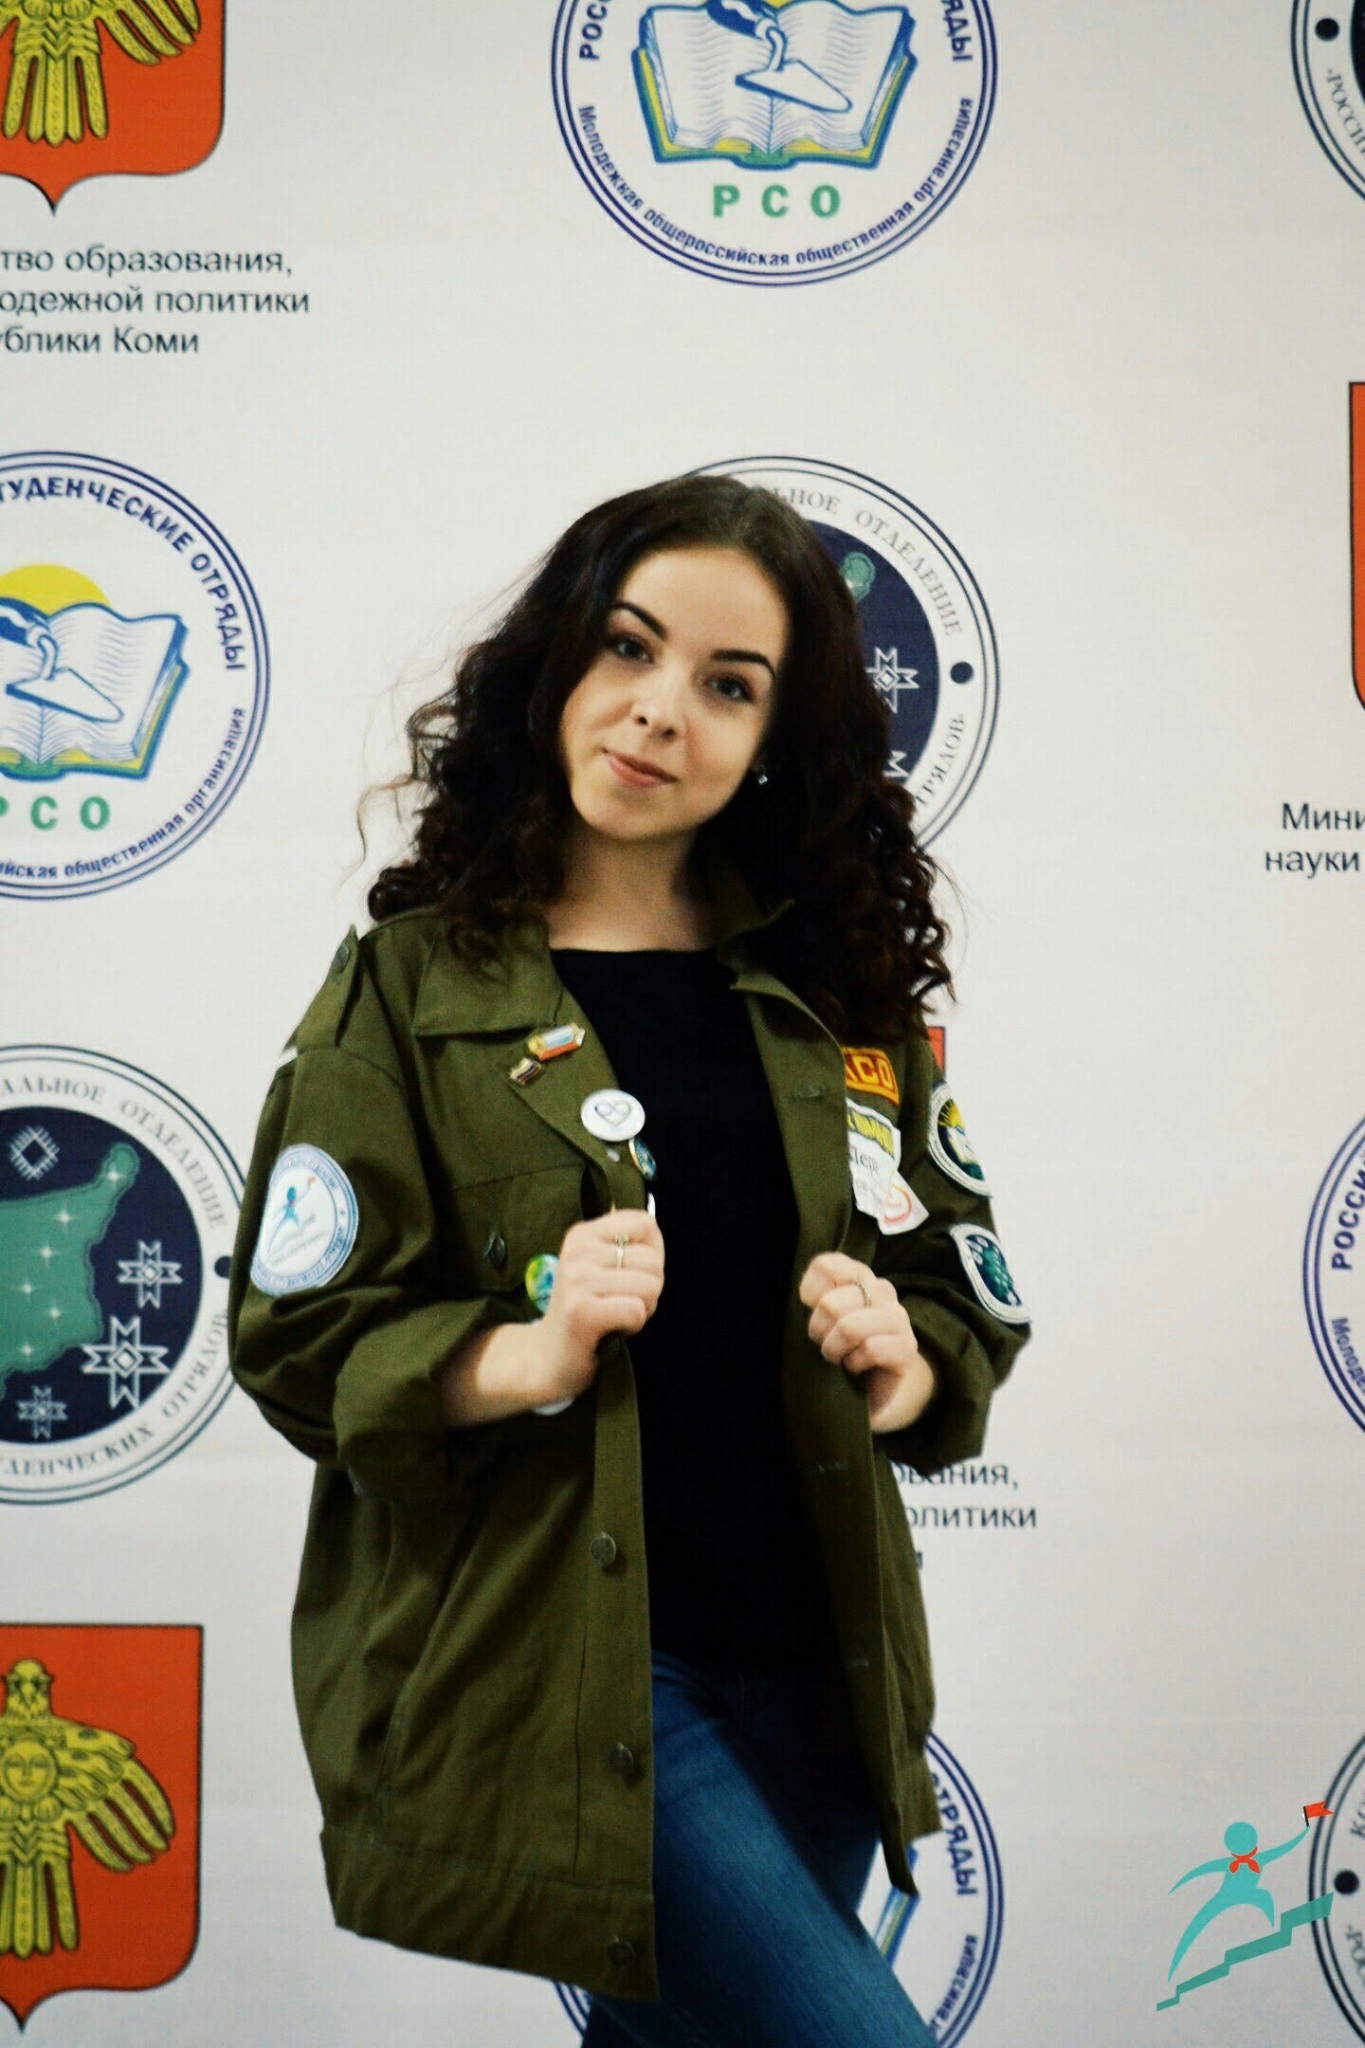 В фотоконкурсе «Зачетная студентка» на портале PG11.ru появилась первая участница